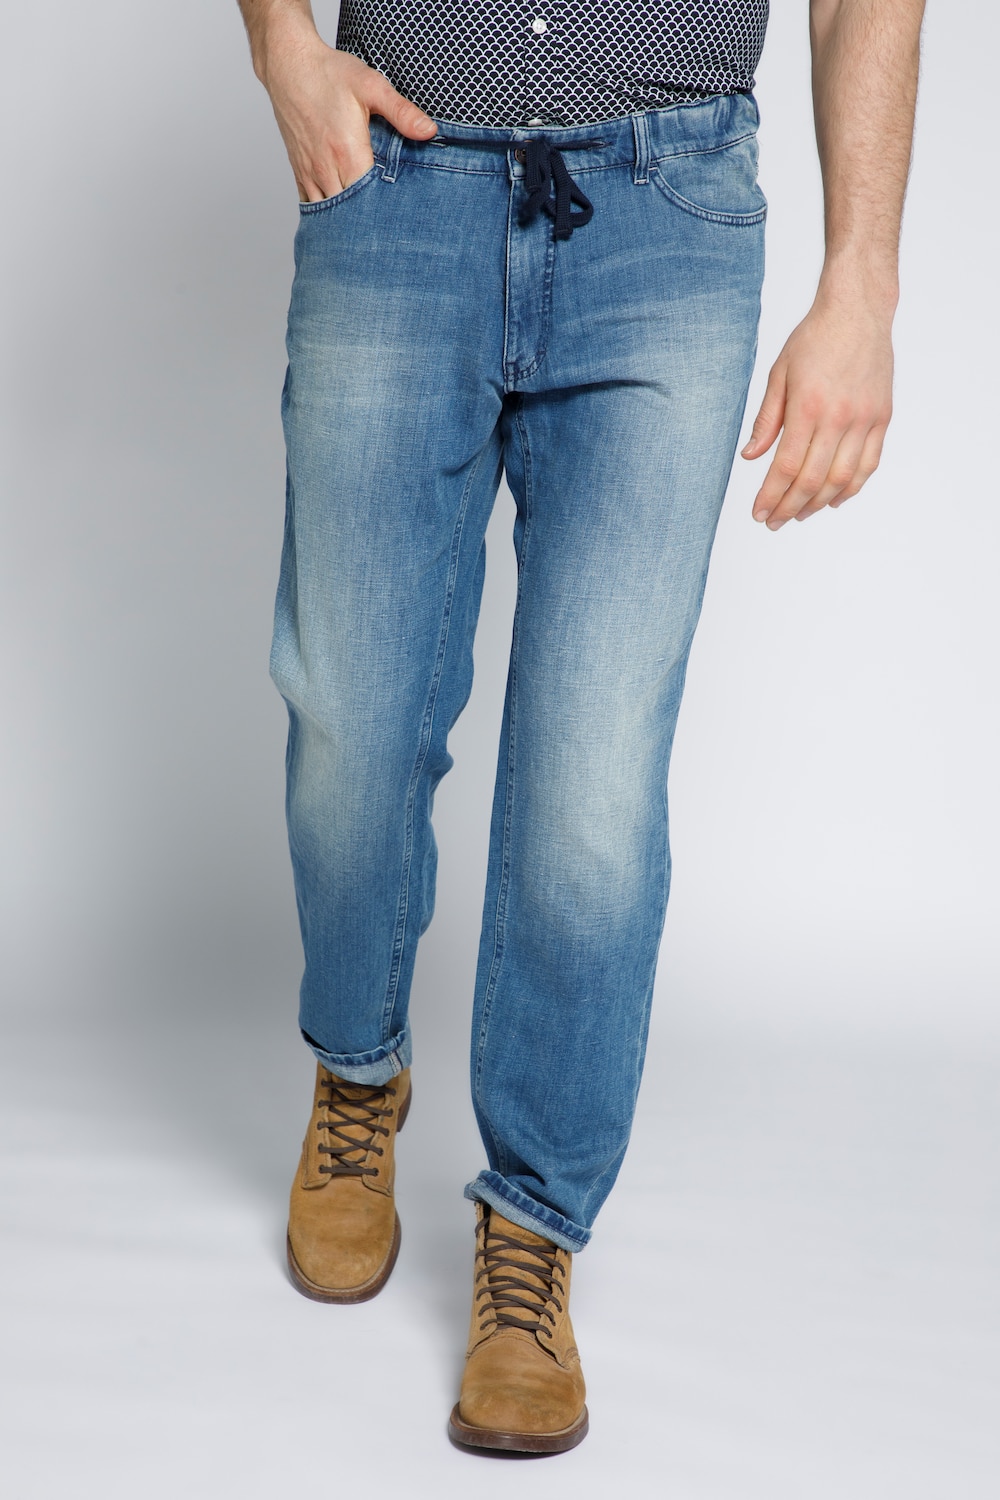 Grote Maten jeans, Heren, blauw, Maat: 52, Katoen/Linnen, JP1880